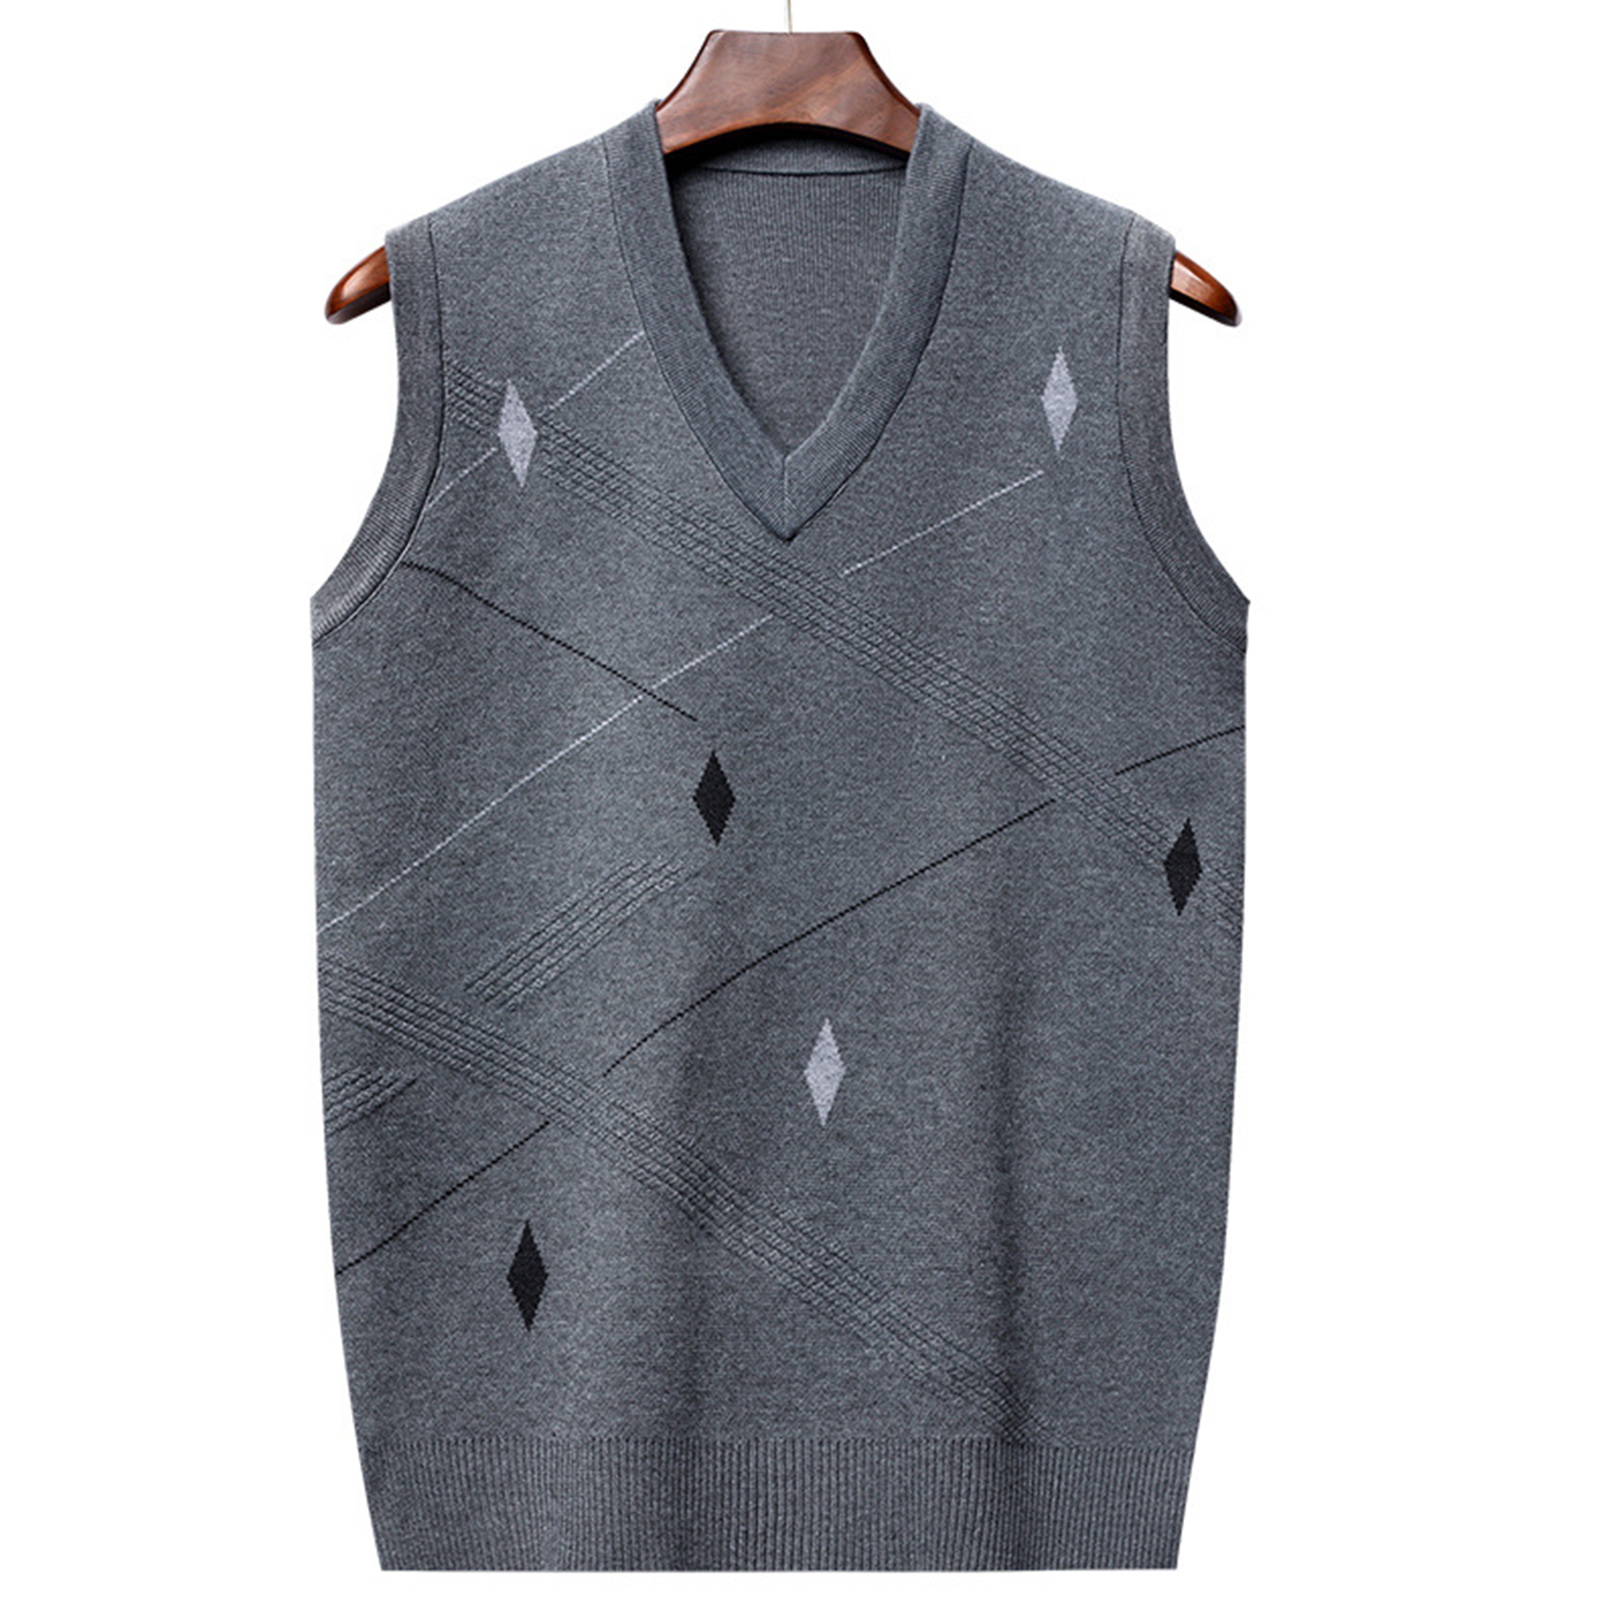 PJ PAUL JONES Men's Sweater Vest V-Neck Sleeveless Cable Knitted Cardigan  Vest | eBay